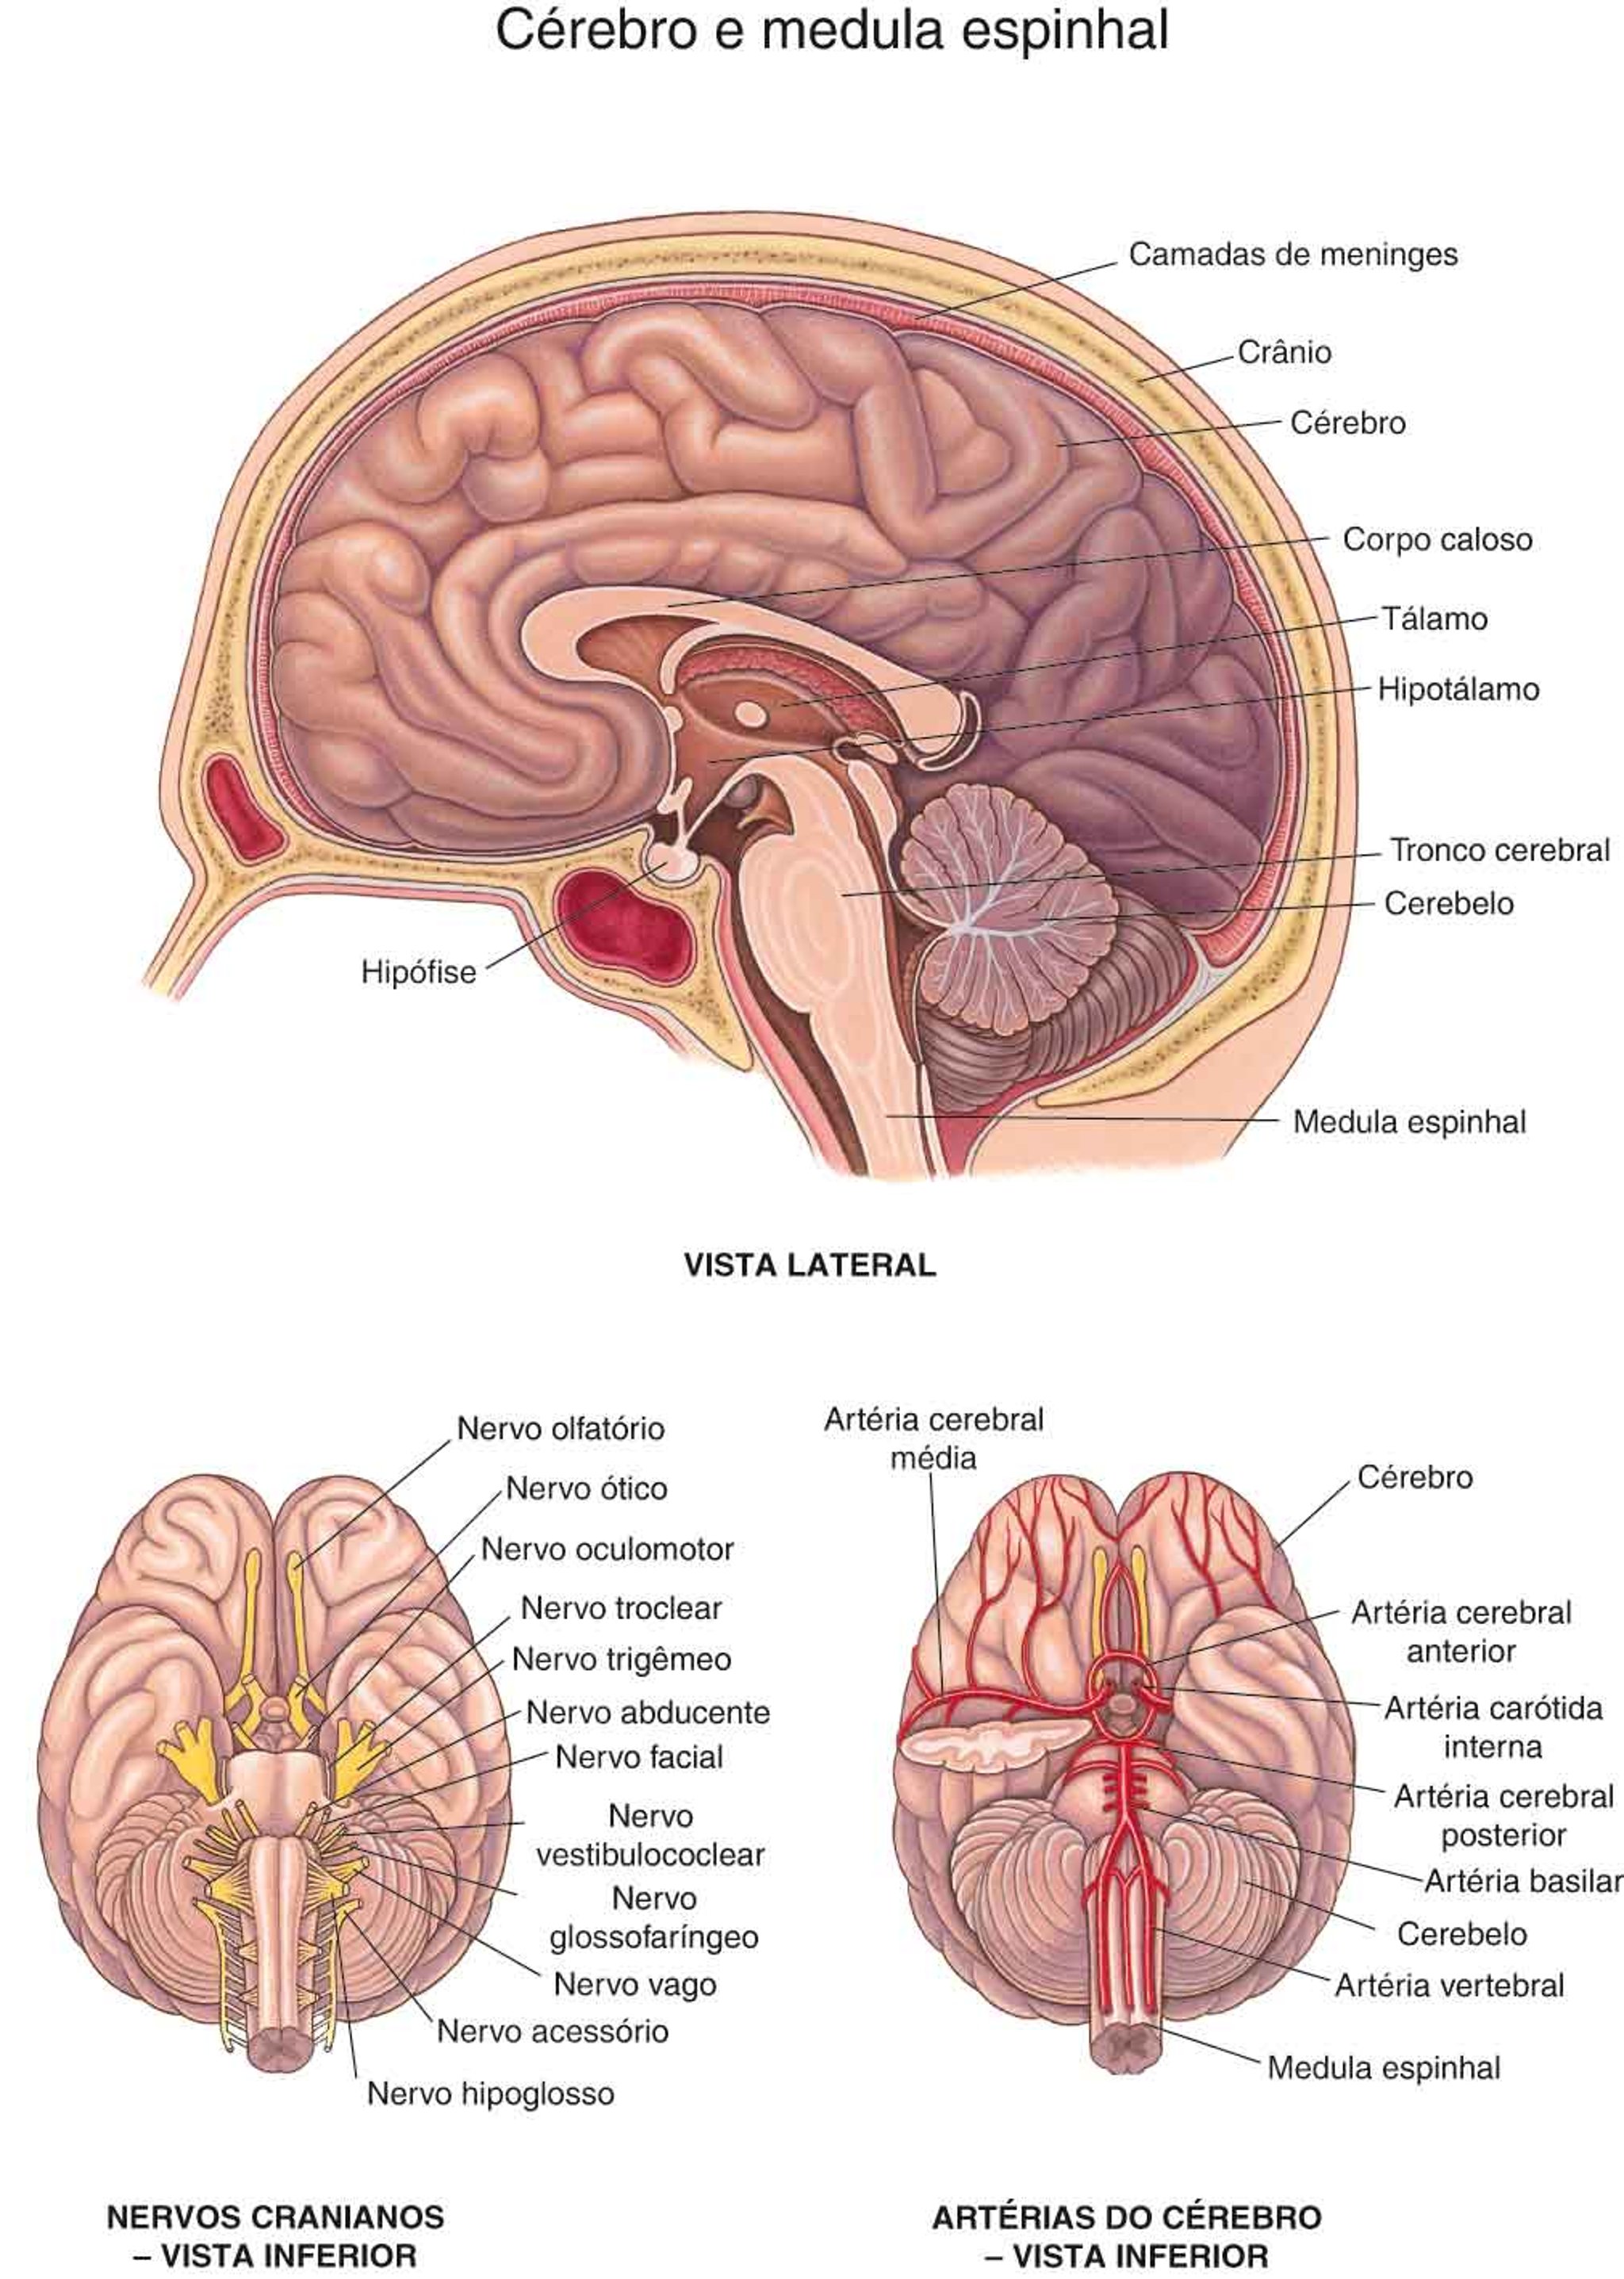 Cérebro: Nervos e artérias